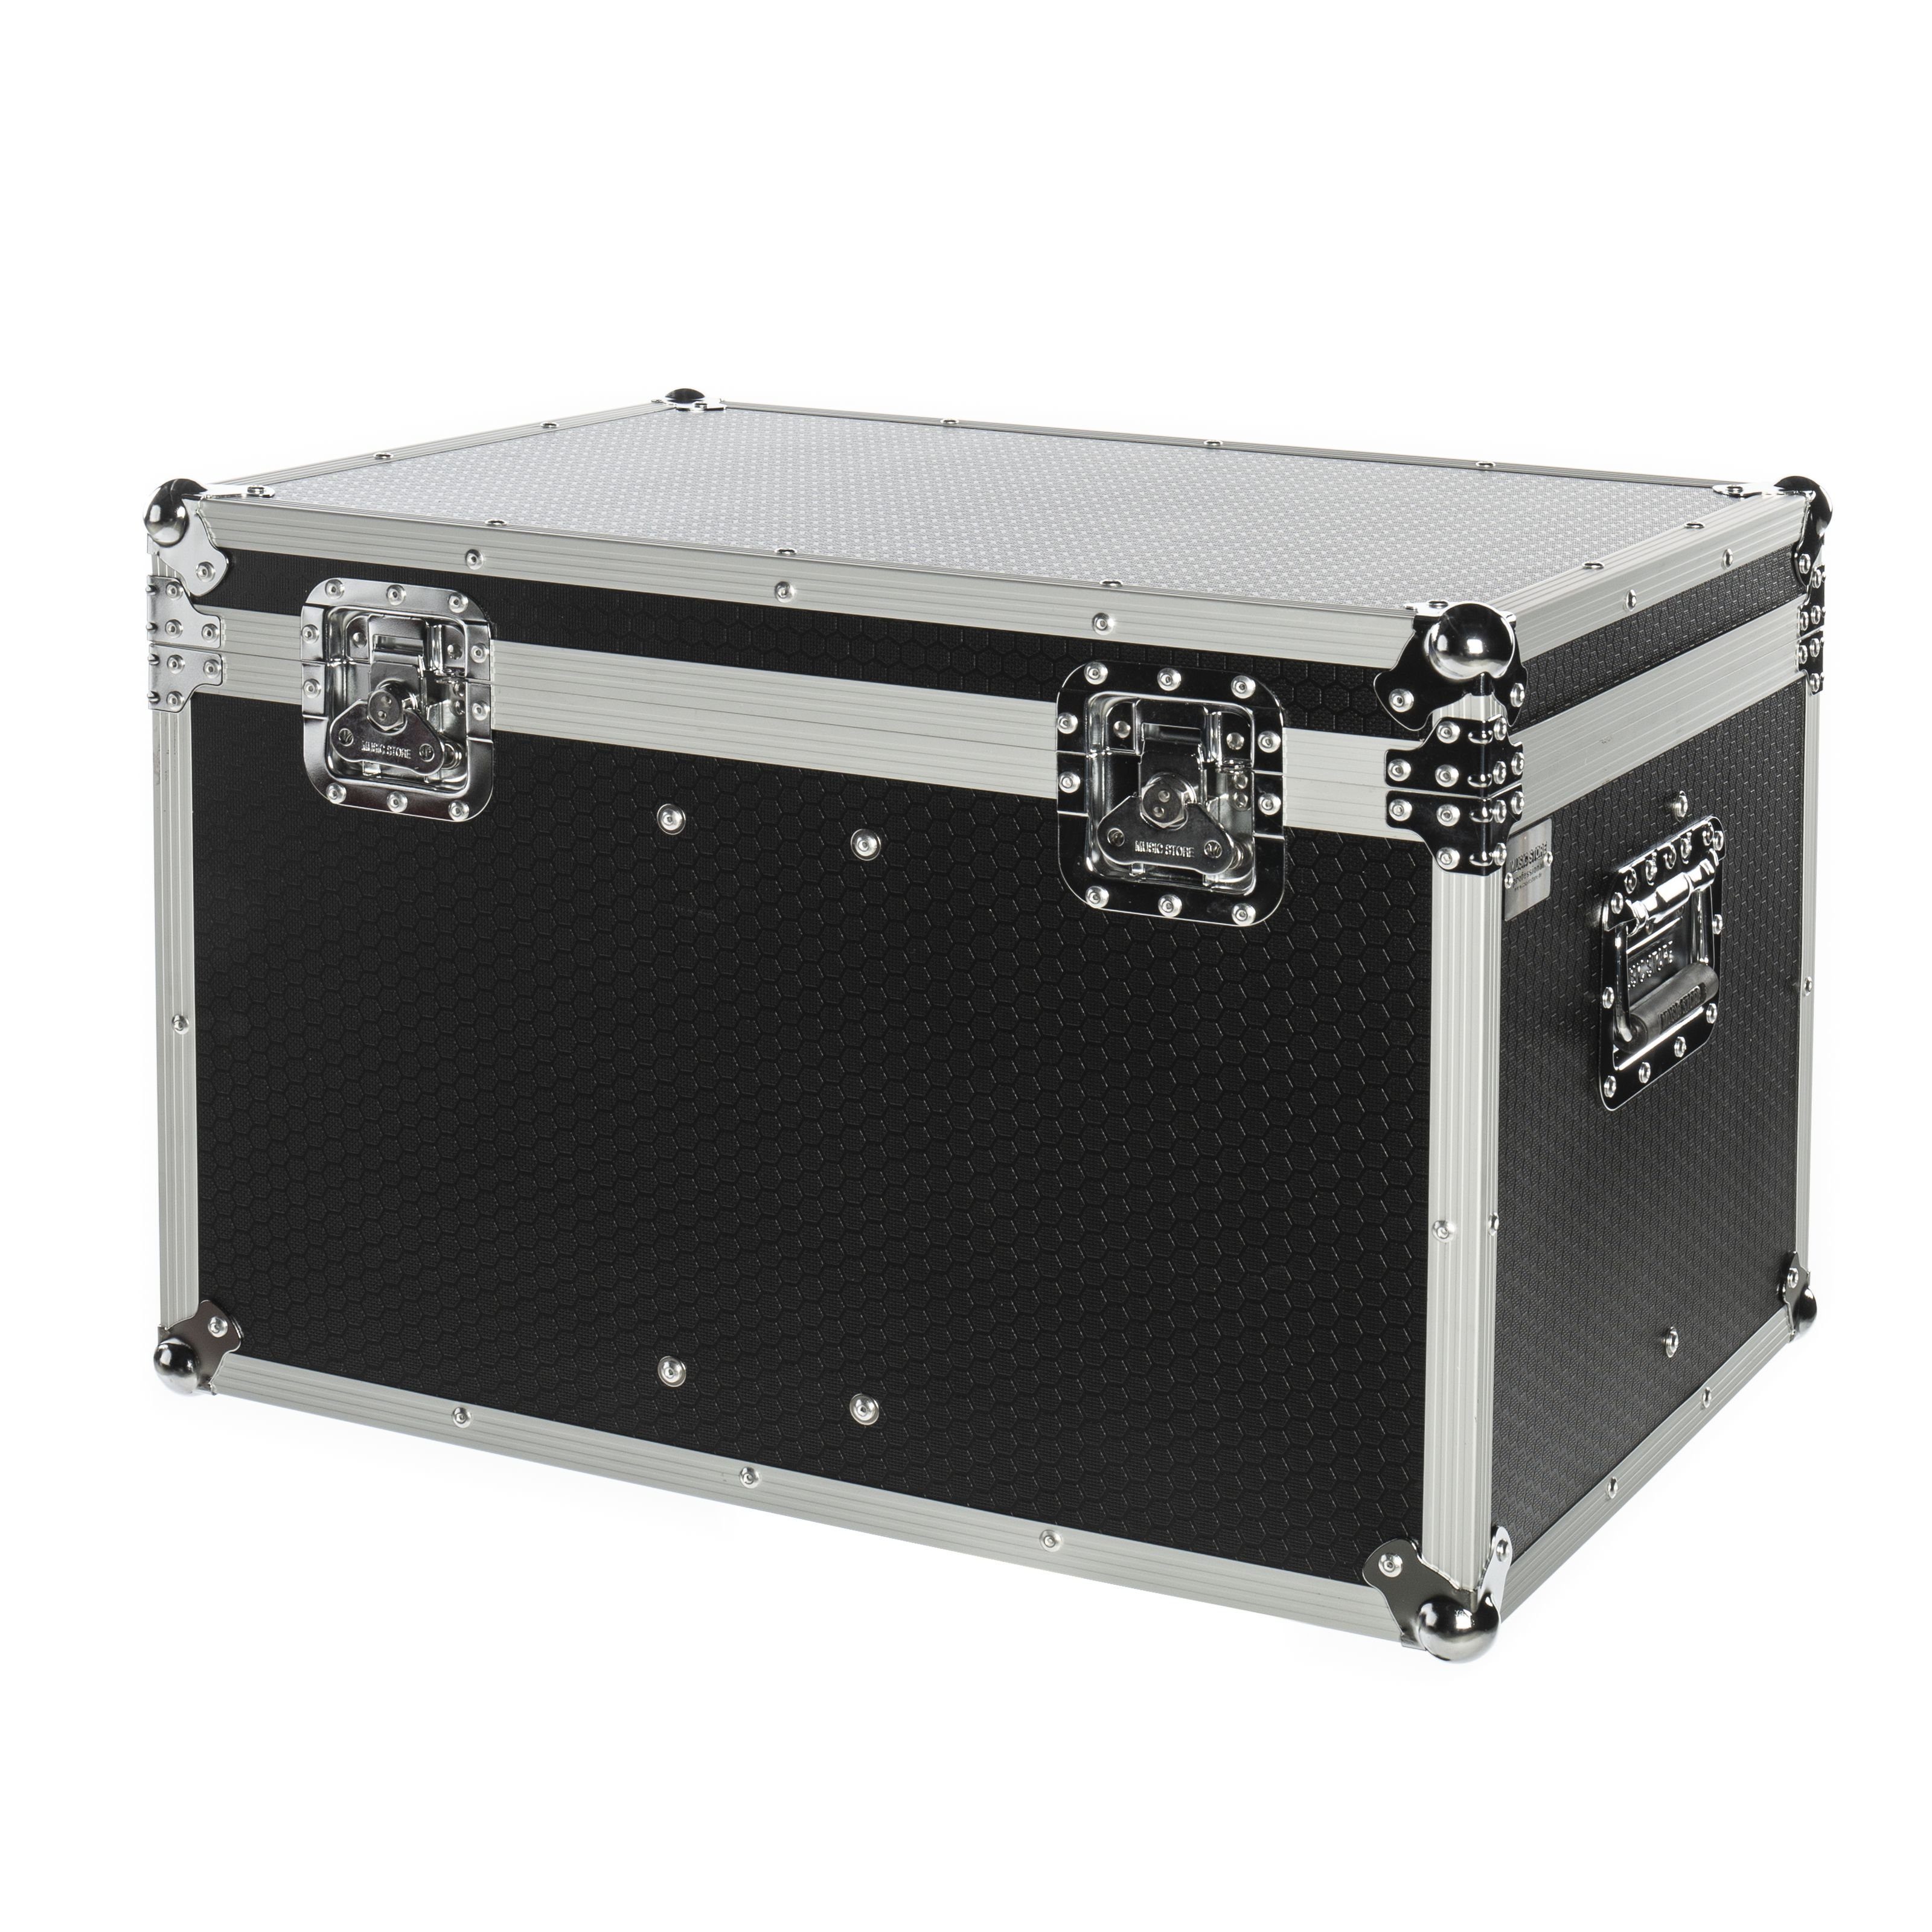 Soundbox Koffer online kaufen